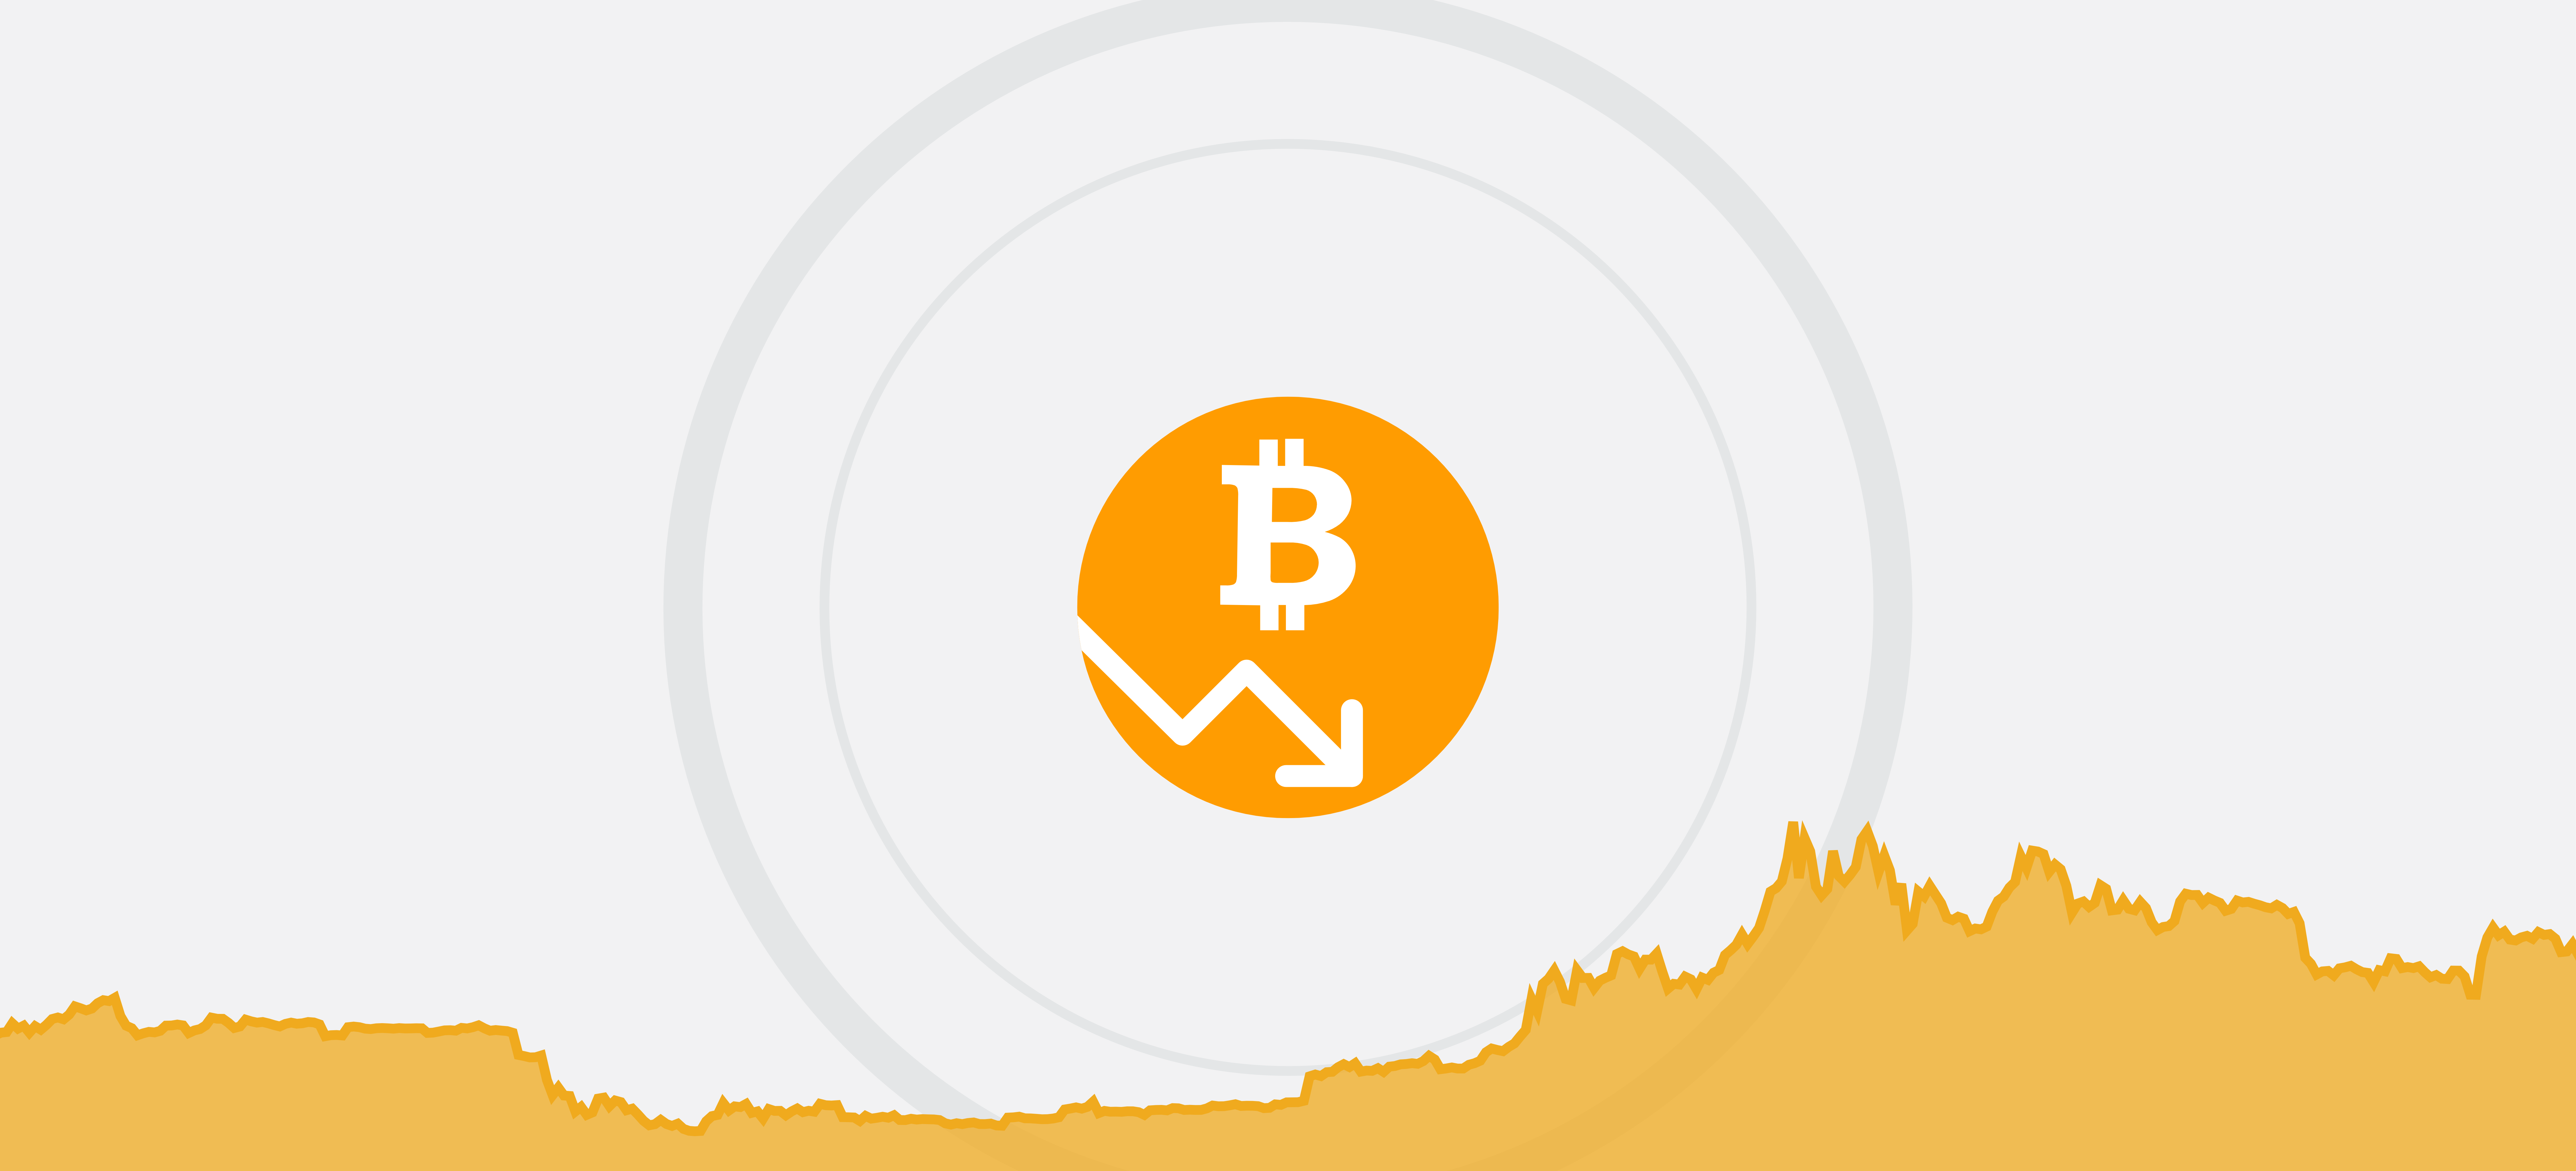 Prendere in prestito bitcoin, I prestiti crypto arrivano su Coinbase - The Cryptonomist